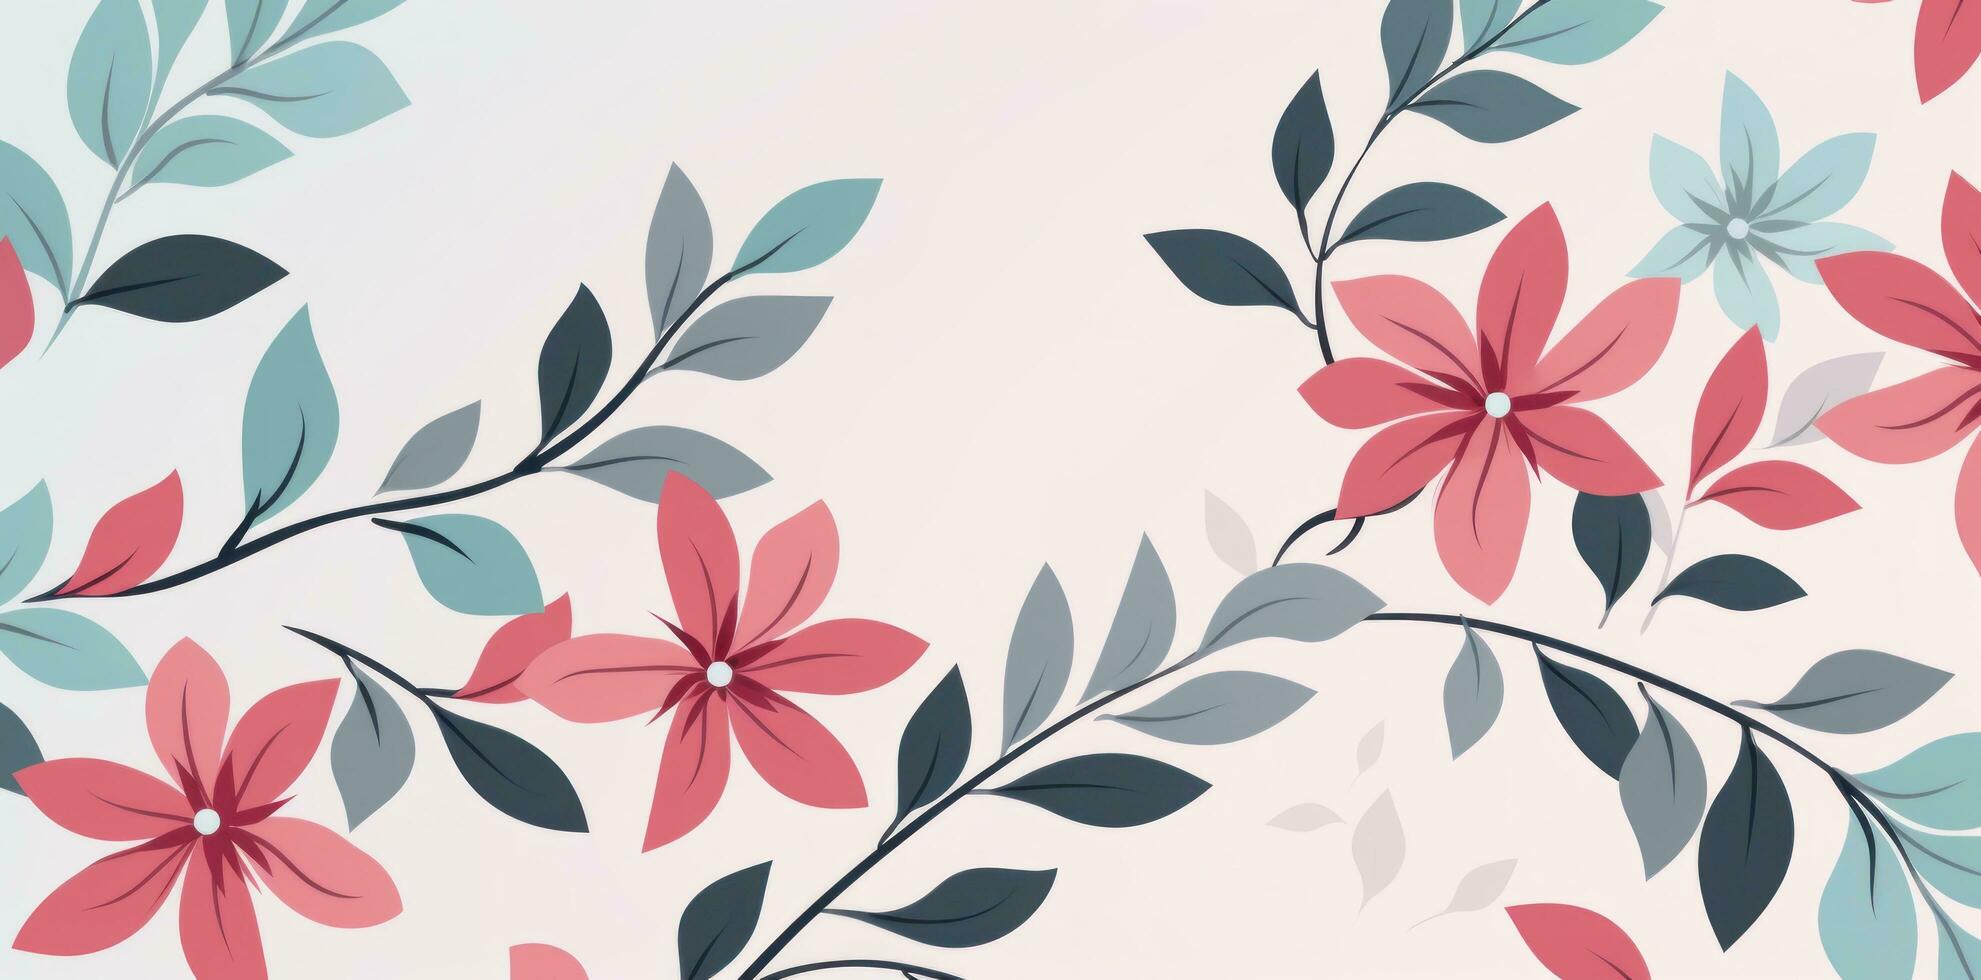 Rosa Blumen- Illustration Hintergrund foto